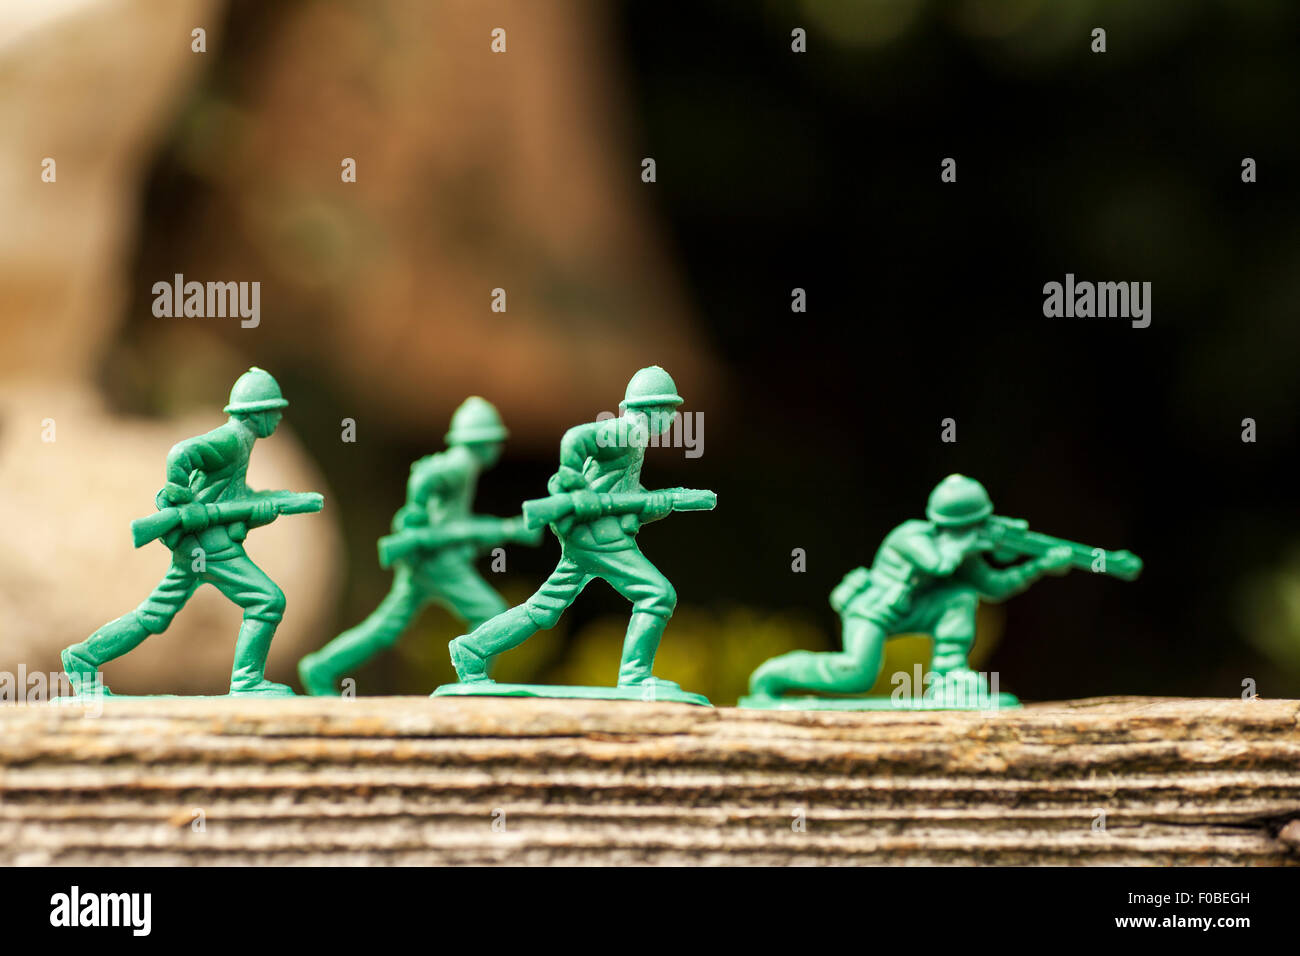 Petits soldats en plastique vert/armée de hommes en mission dans l'arrière jardin entouré de pelouse et fleurs Banque D'Images